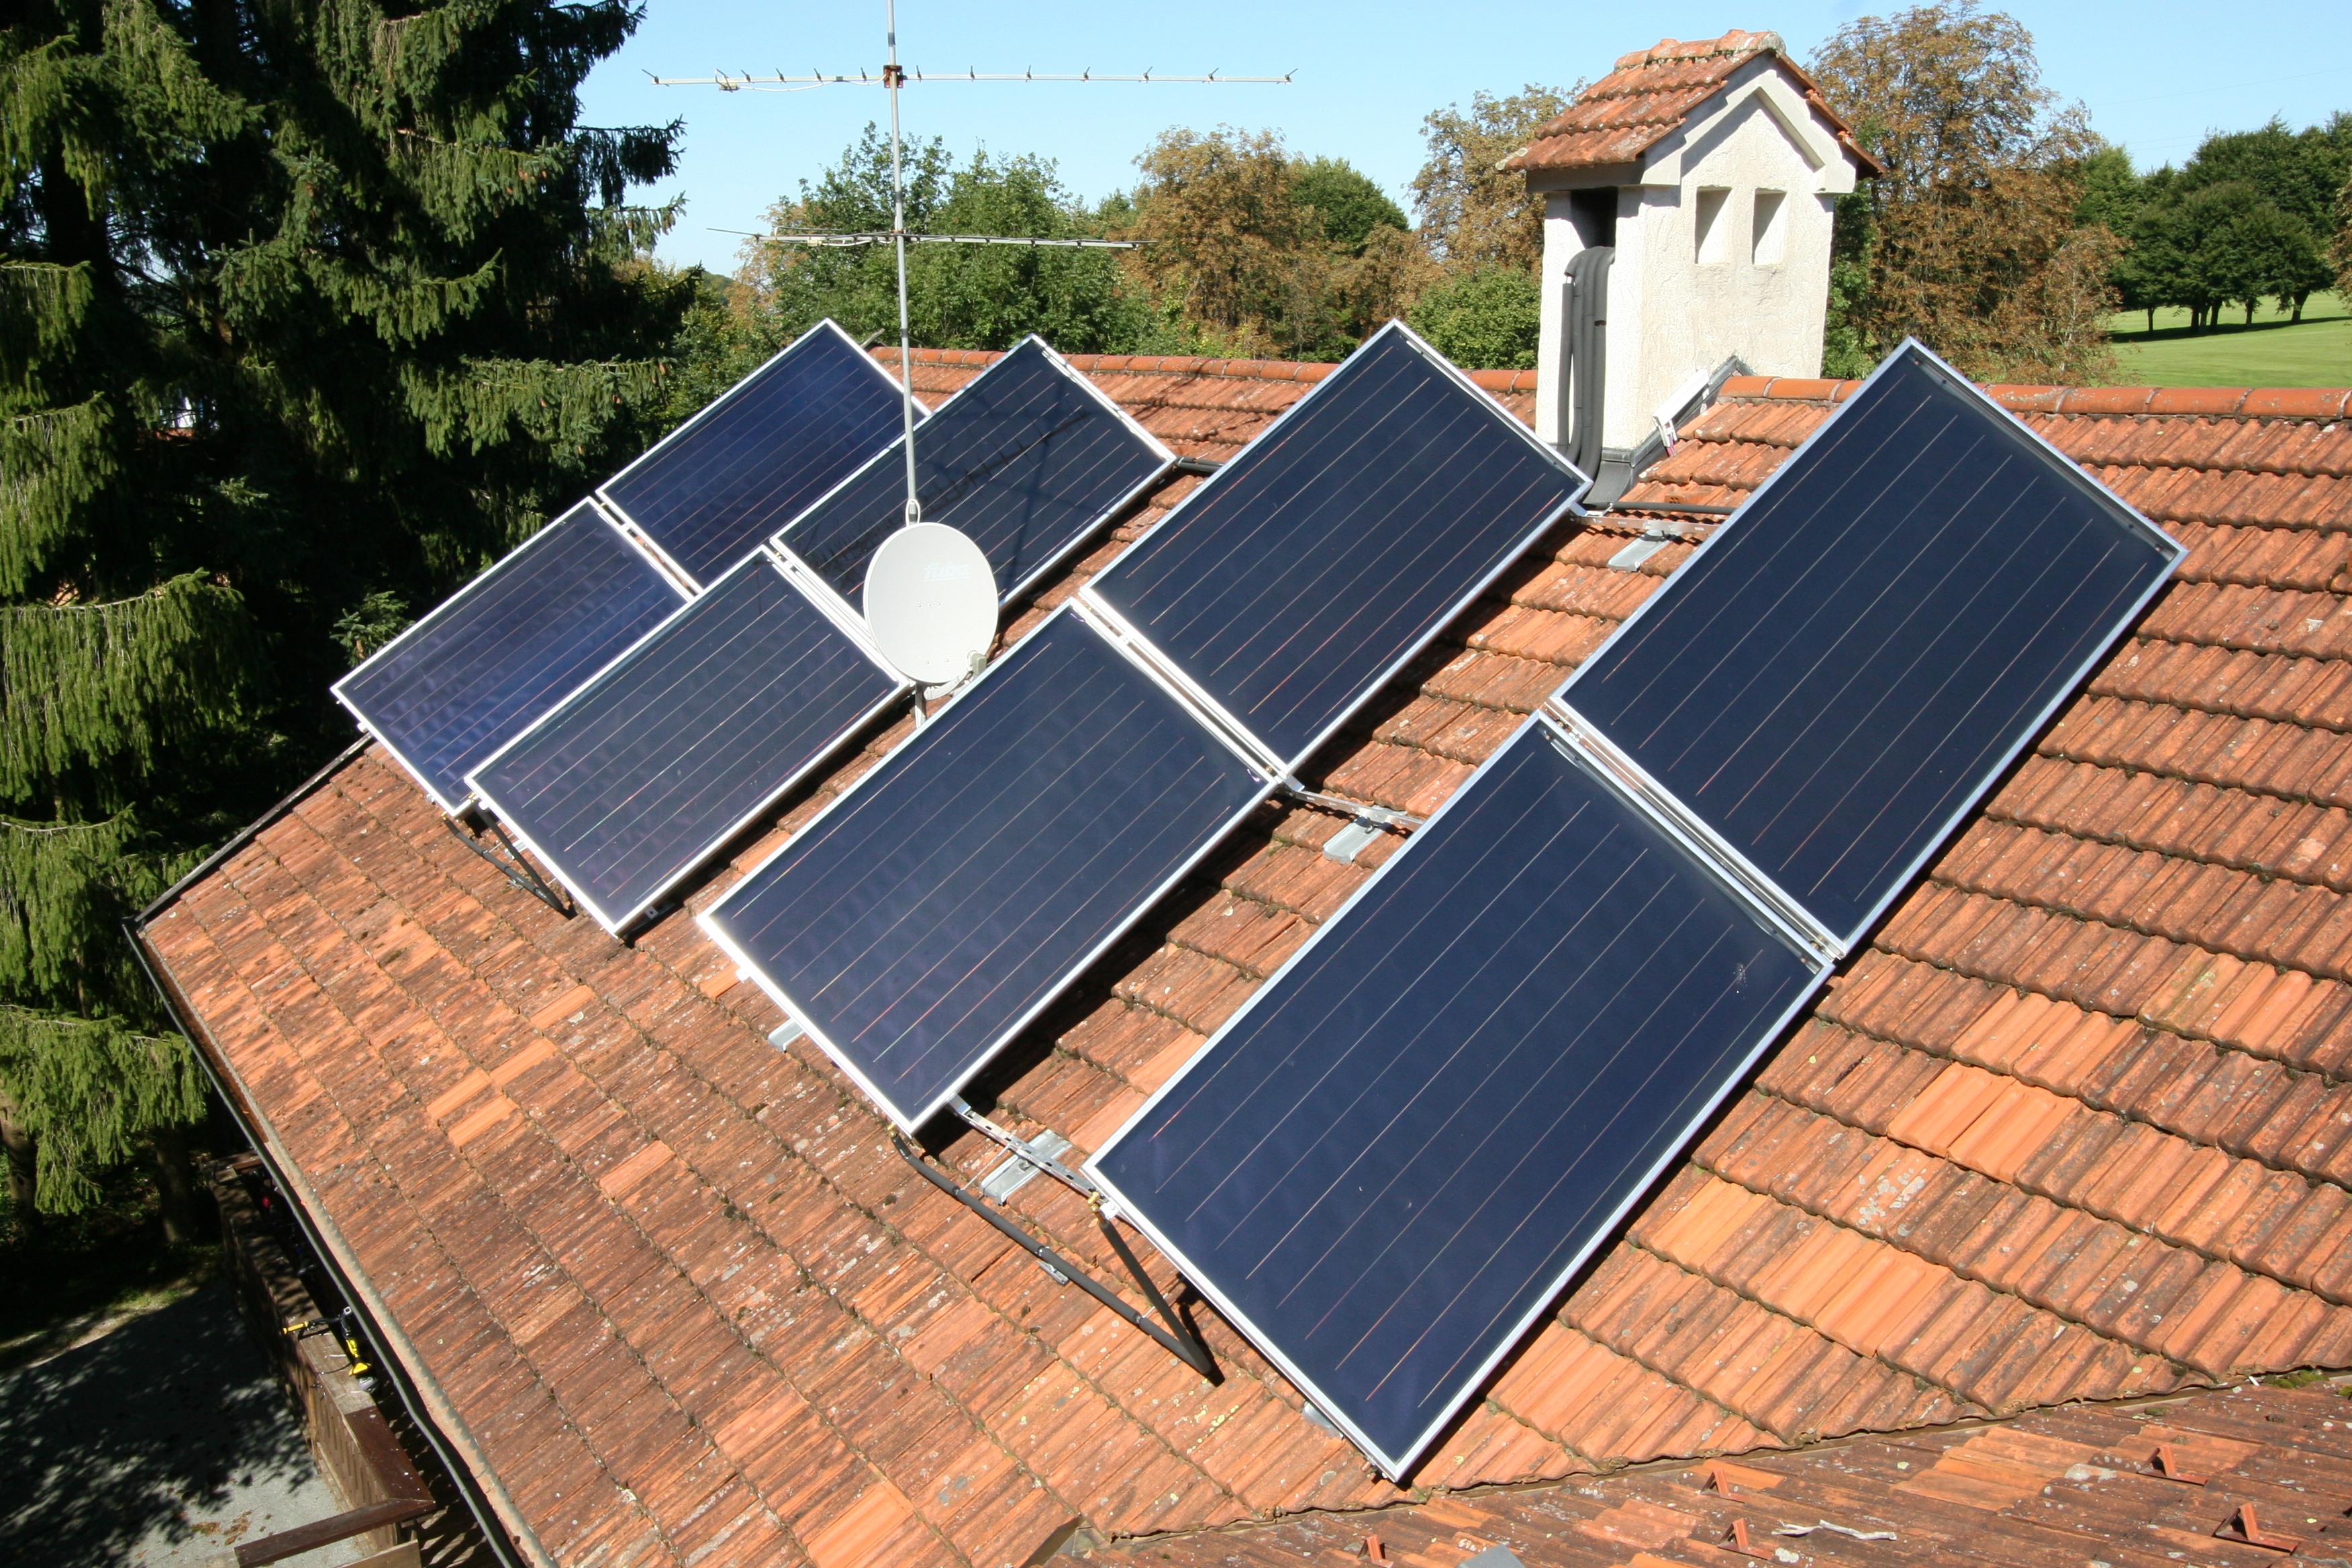 Solarplatten zur Energiegewinnung aus der Sonne